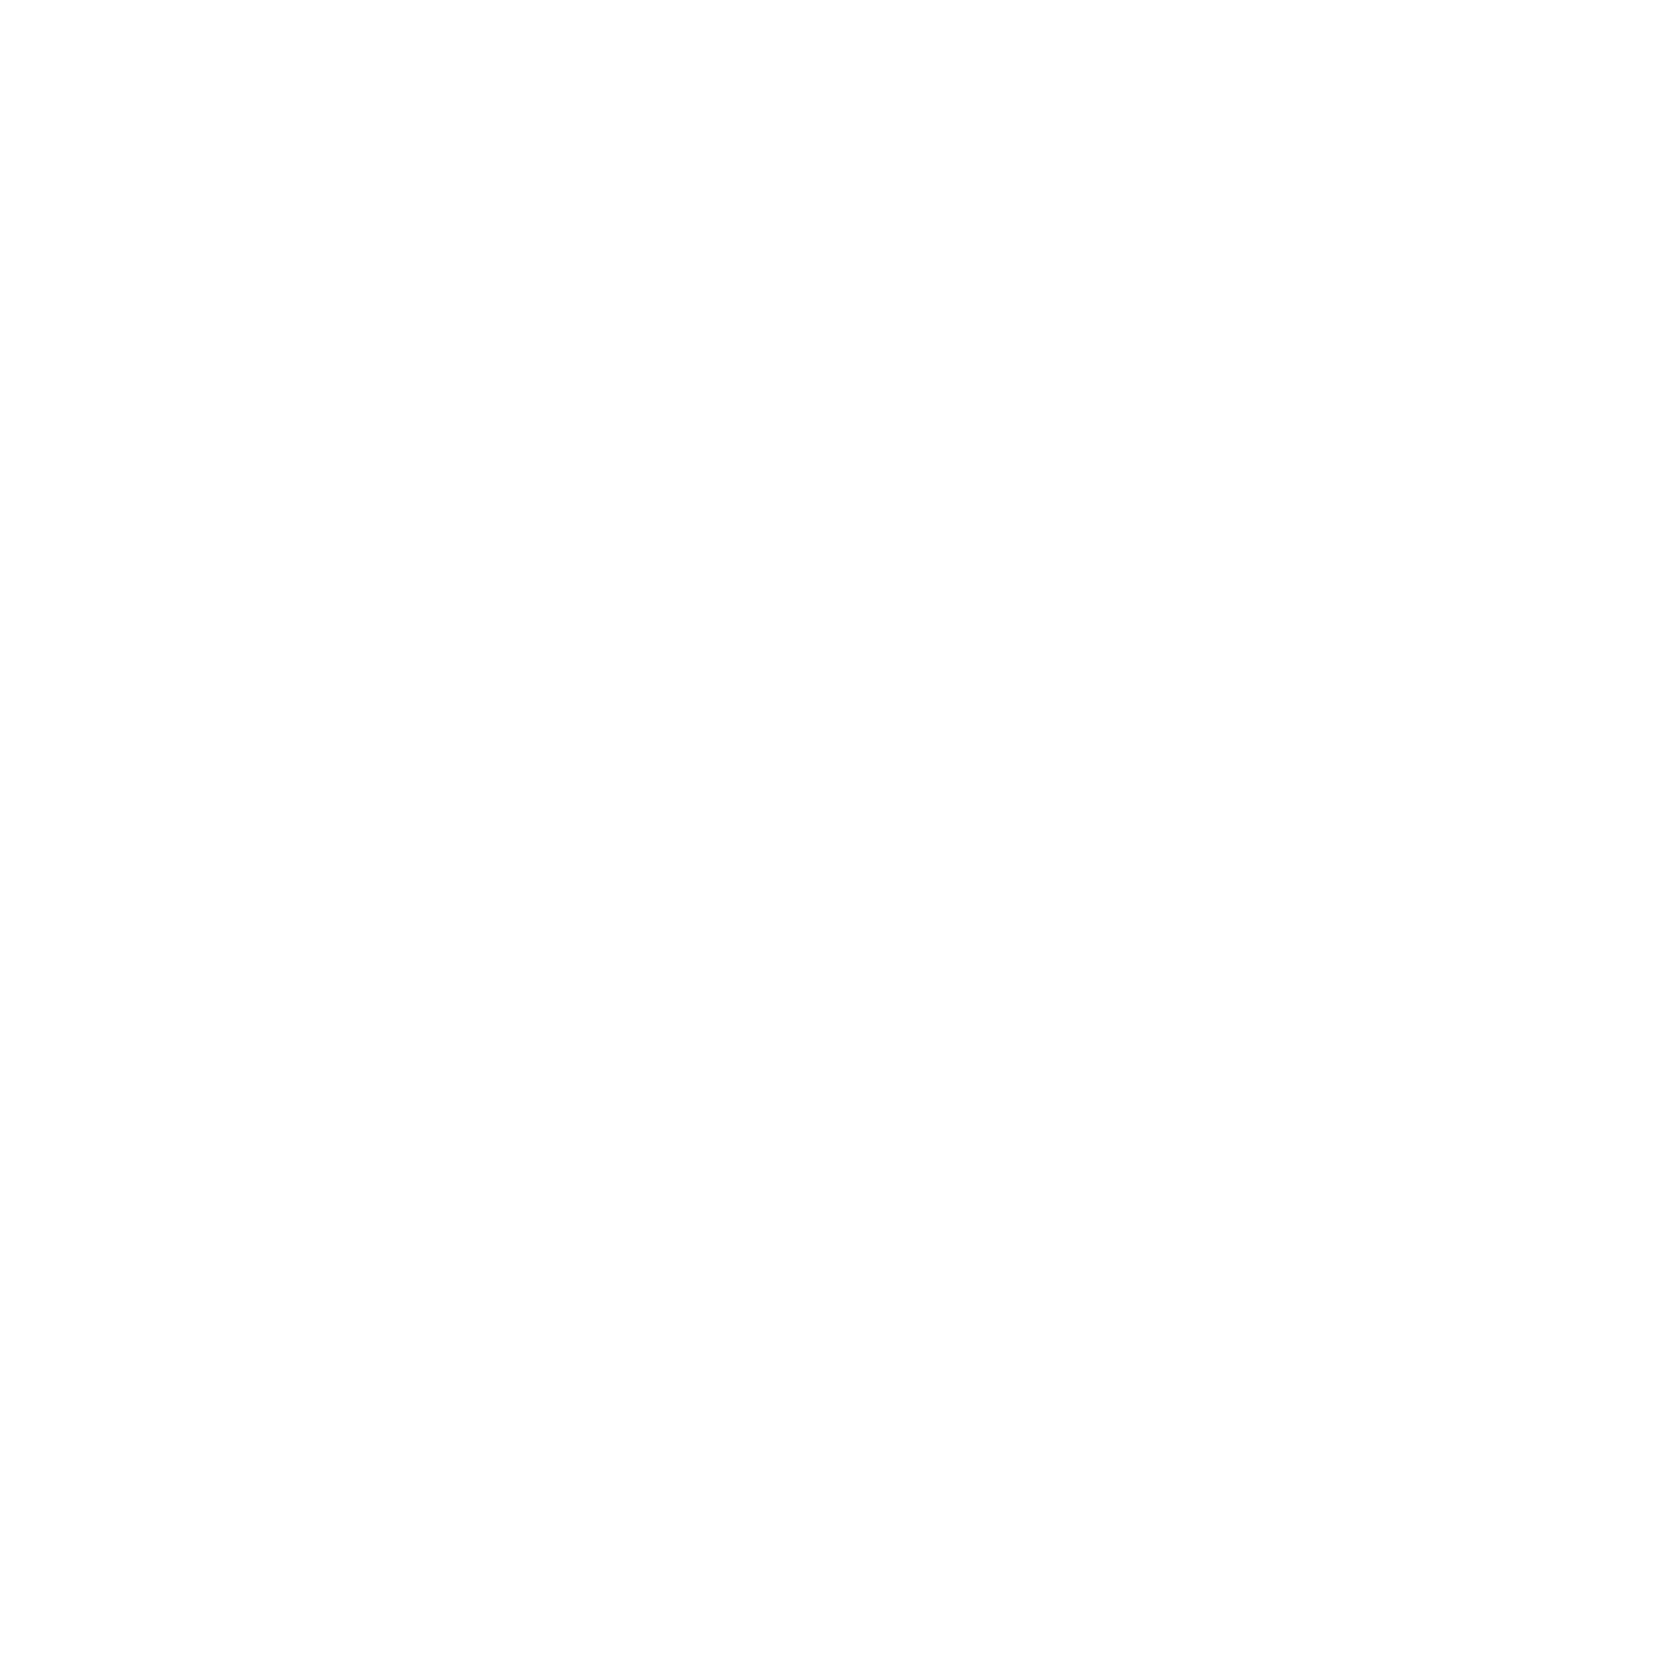 овощная консервация аджапсандал джонджоли салат овощной греческий морковный Kula импортер ООО Национальные продукты